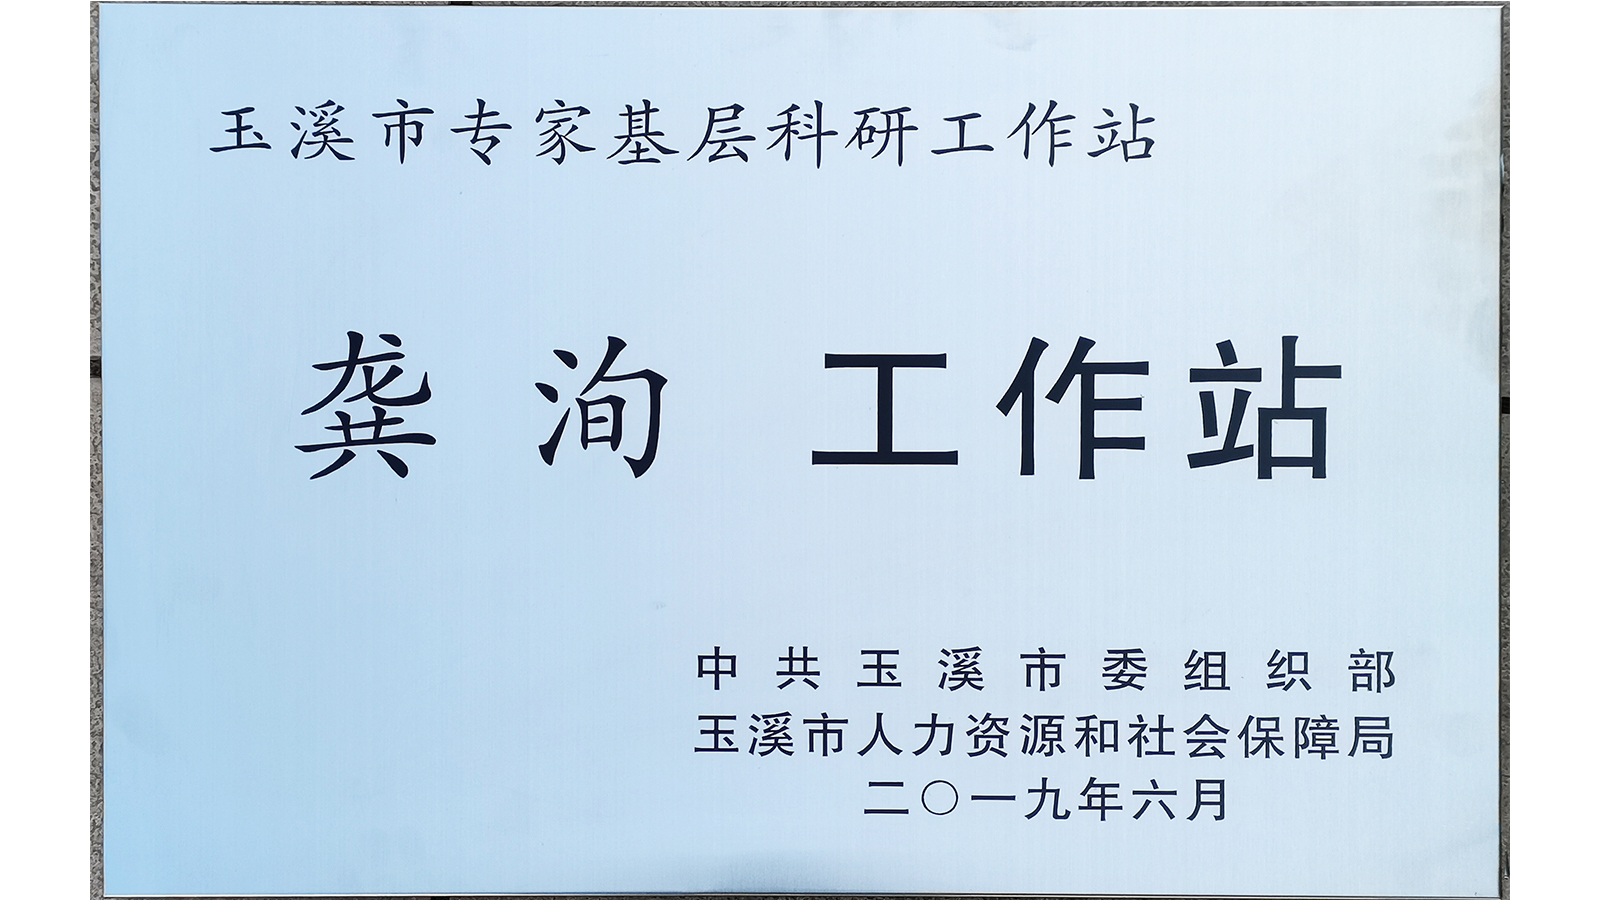 中国科学院昆明植物研究所龚洵研究员专家工作站牌匾